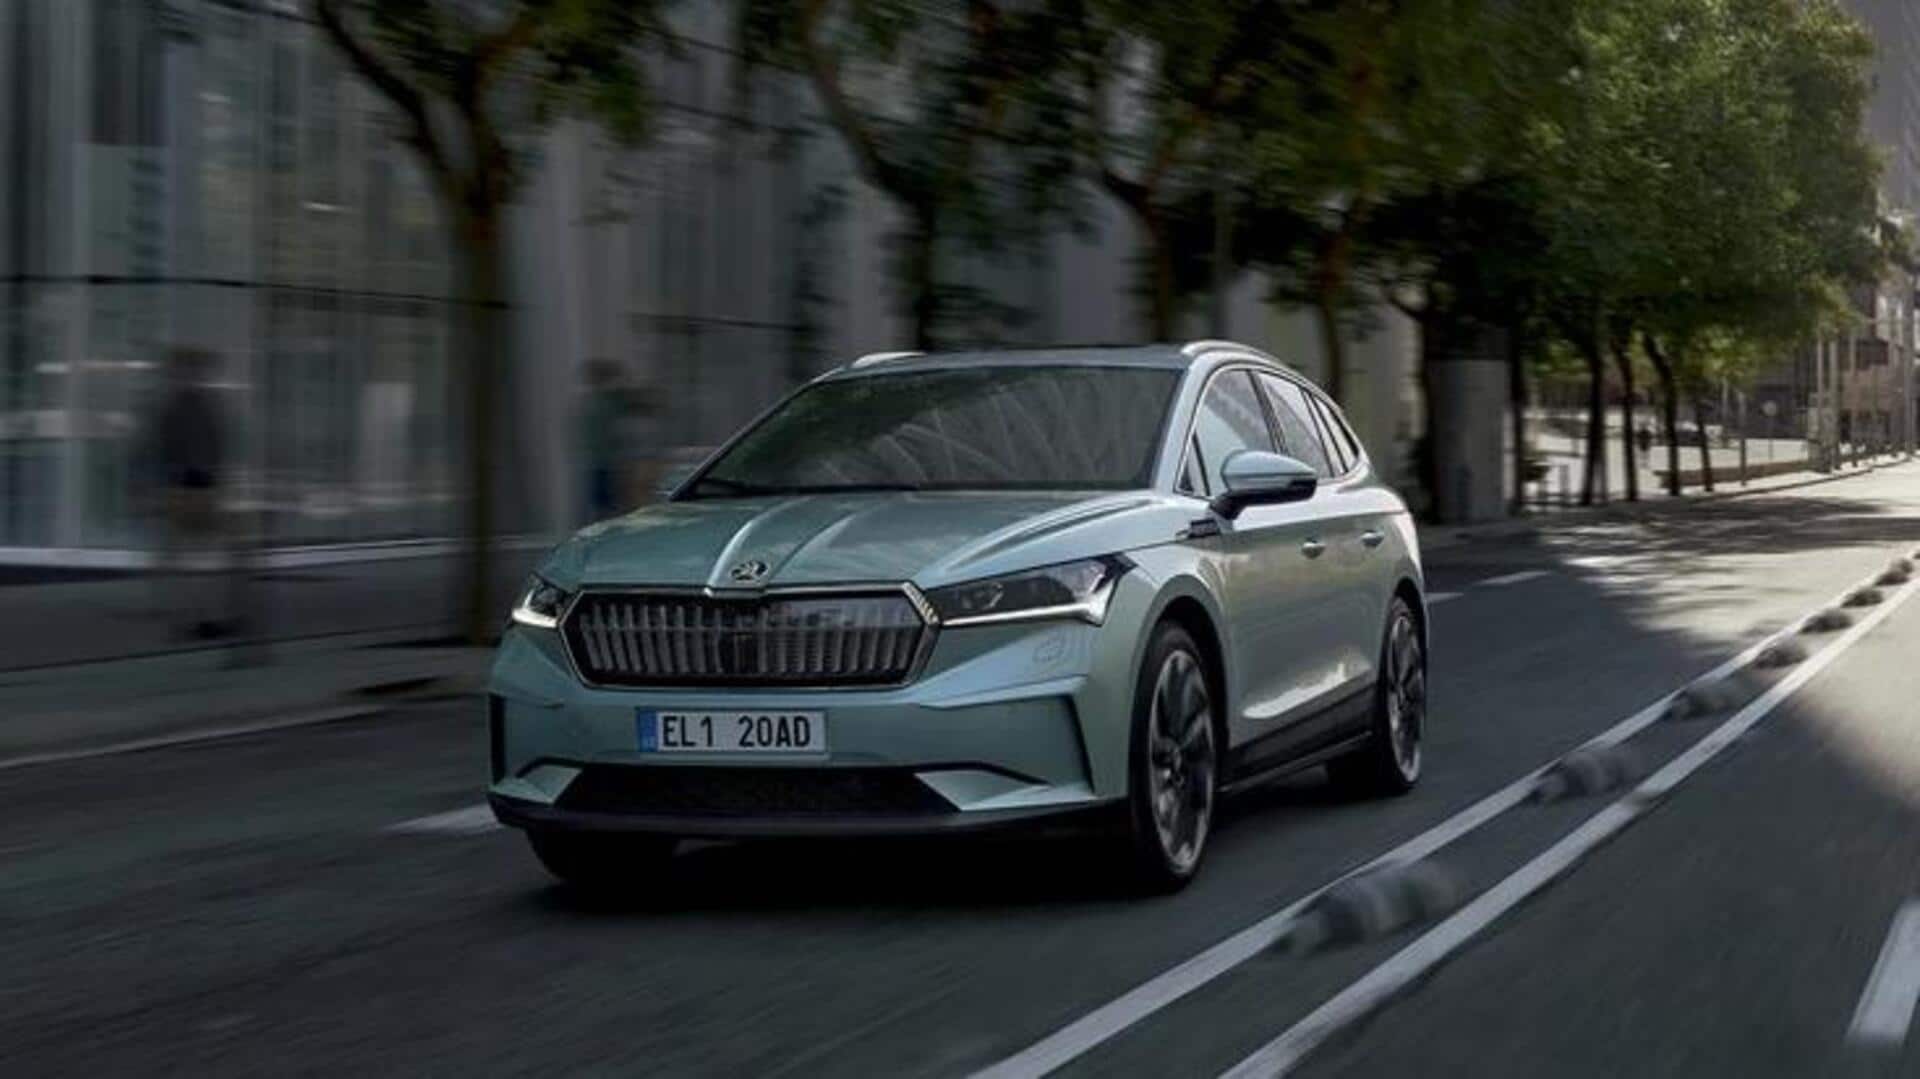 स्कोडा एनाक iV इलेक्ट्रिक SUV टेस्टिंग करते आई नजर, अगले साल देगी दस्तक 